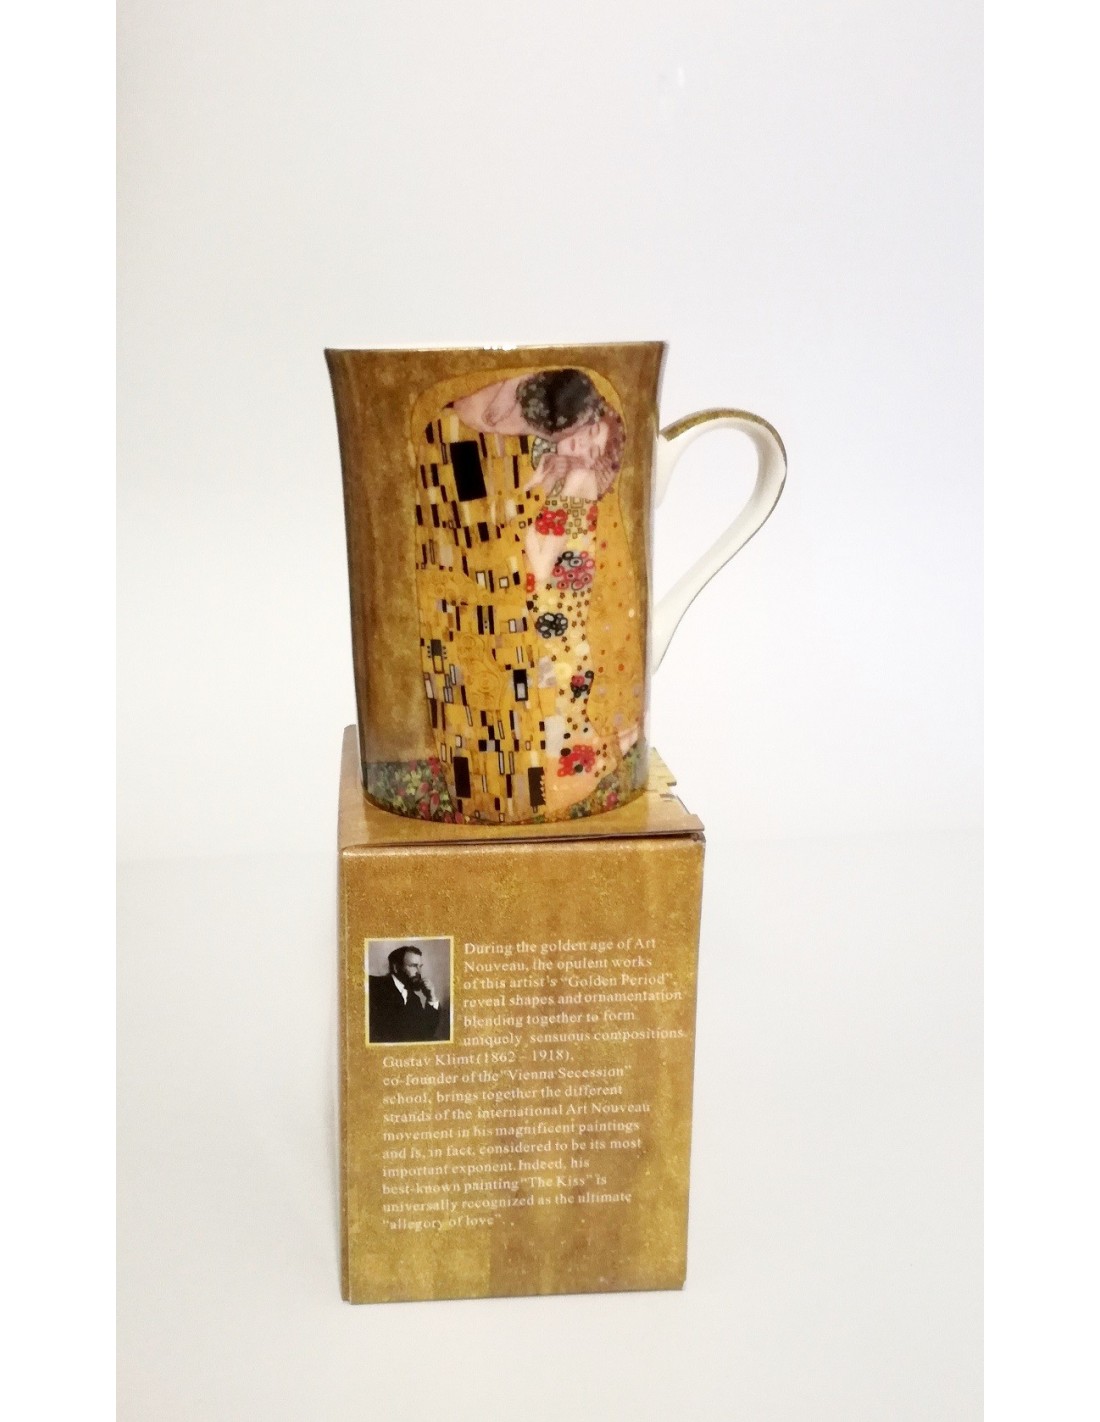 Gustav Klimt Die Familie Tasse Geschenk Karton 0,3L  1.Wahl The Family 300ml